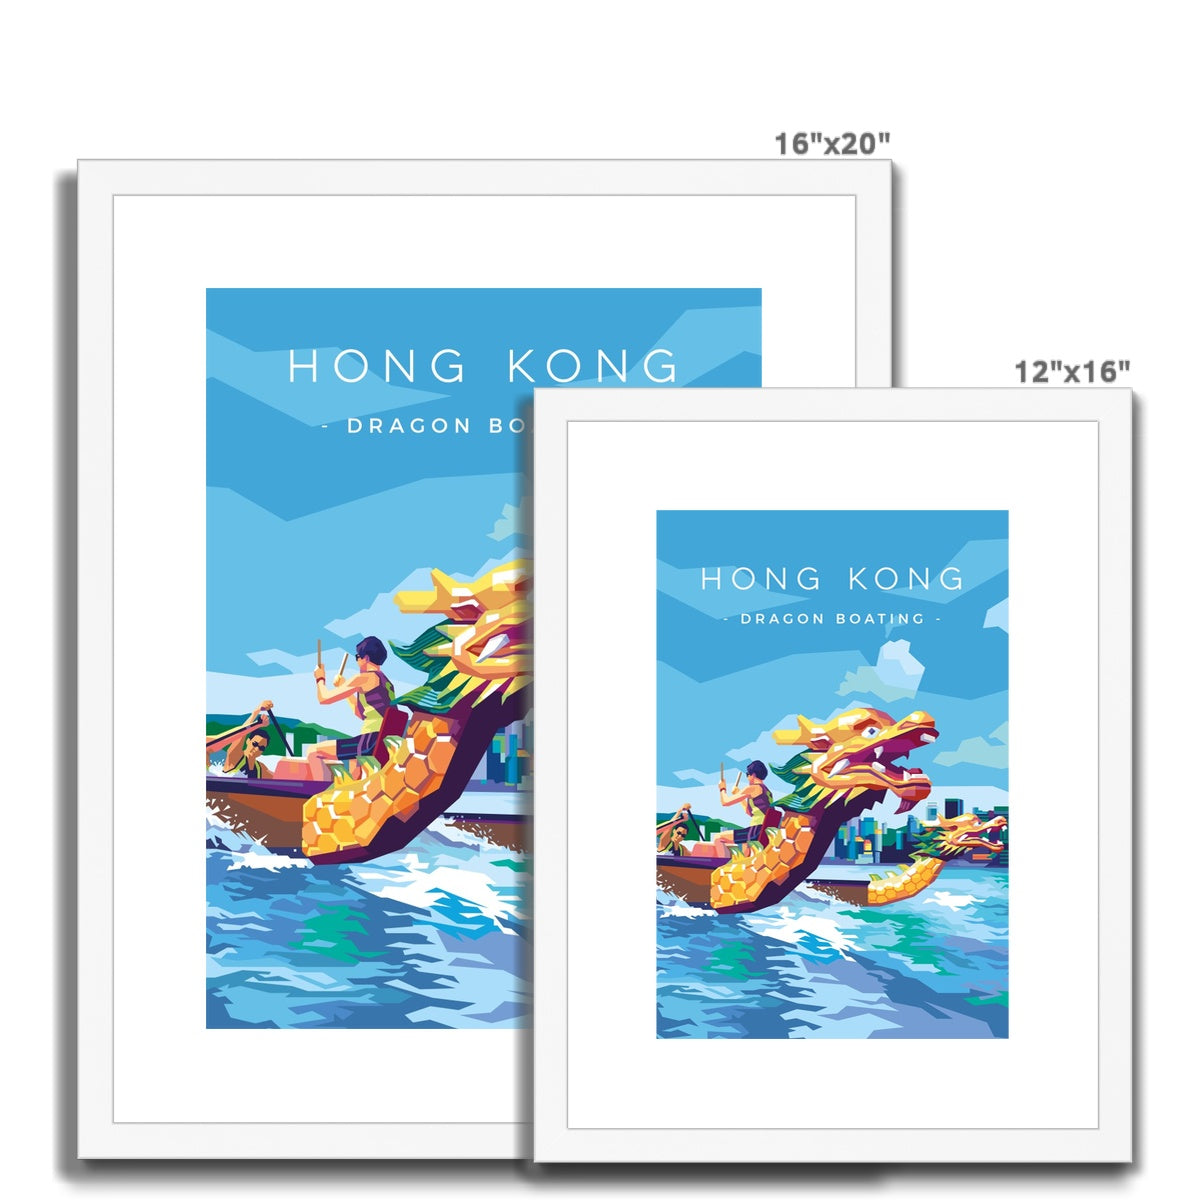 Hong Kong Travel - Dragon Boating Framed & Mounted Print